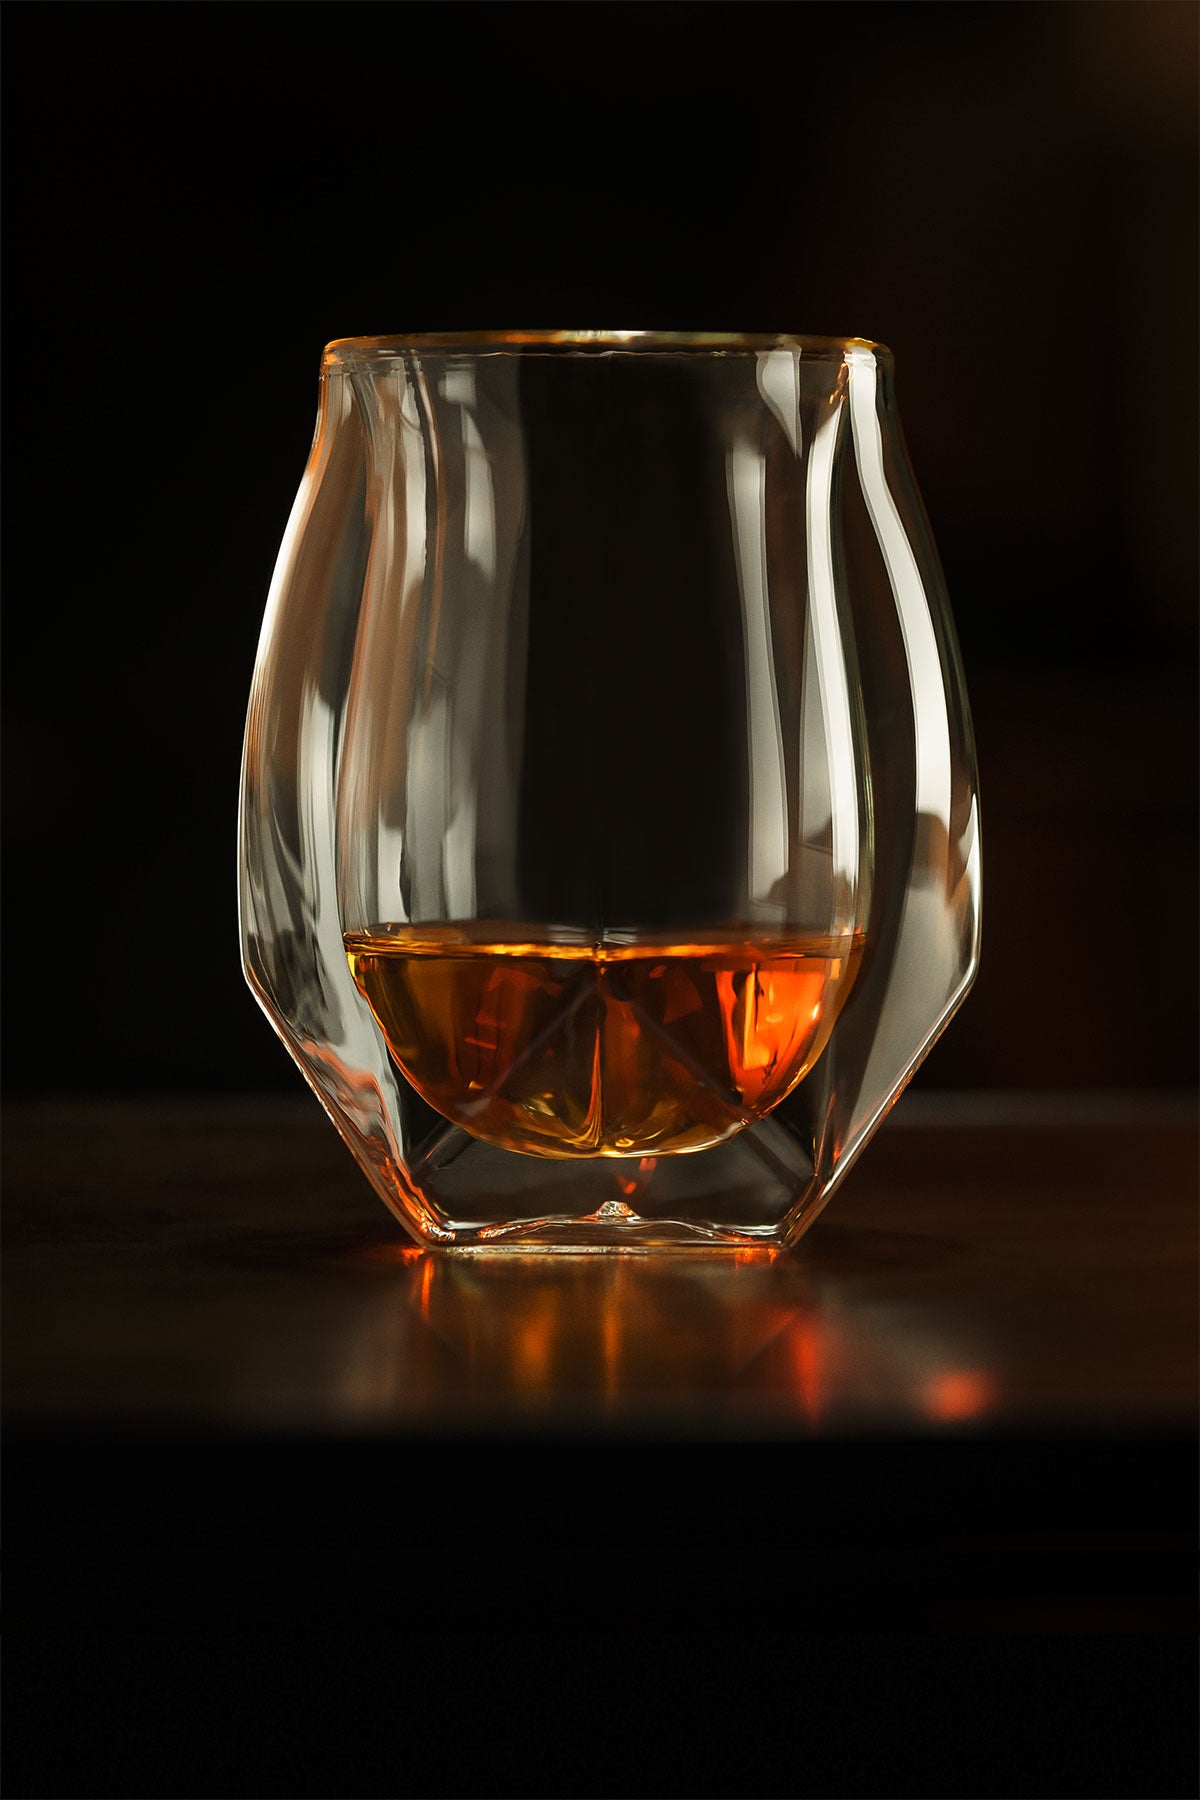 https://ca.norlanglass.com/cdn/shop/files/Norlan-Whisky-Glass-Beautiful-M.jpg?v=1665487916&width=1500